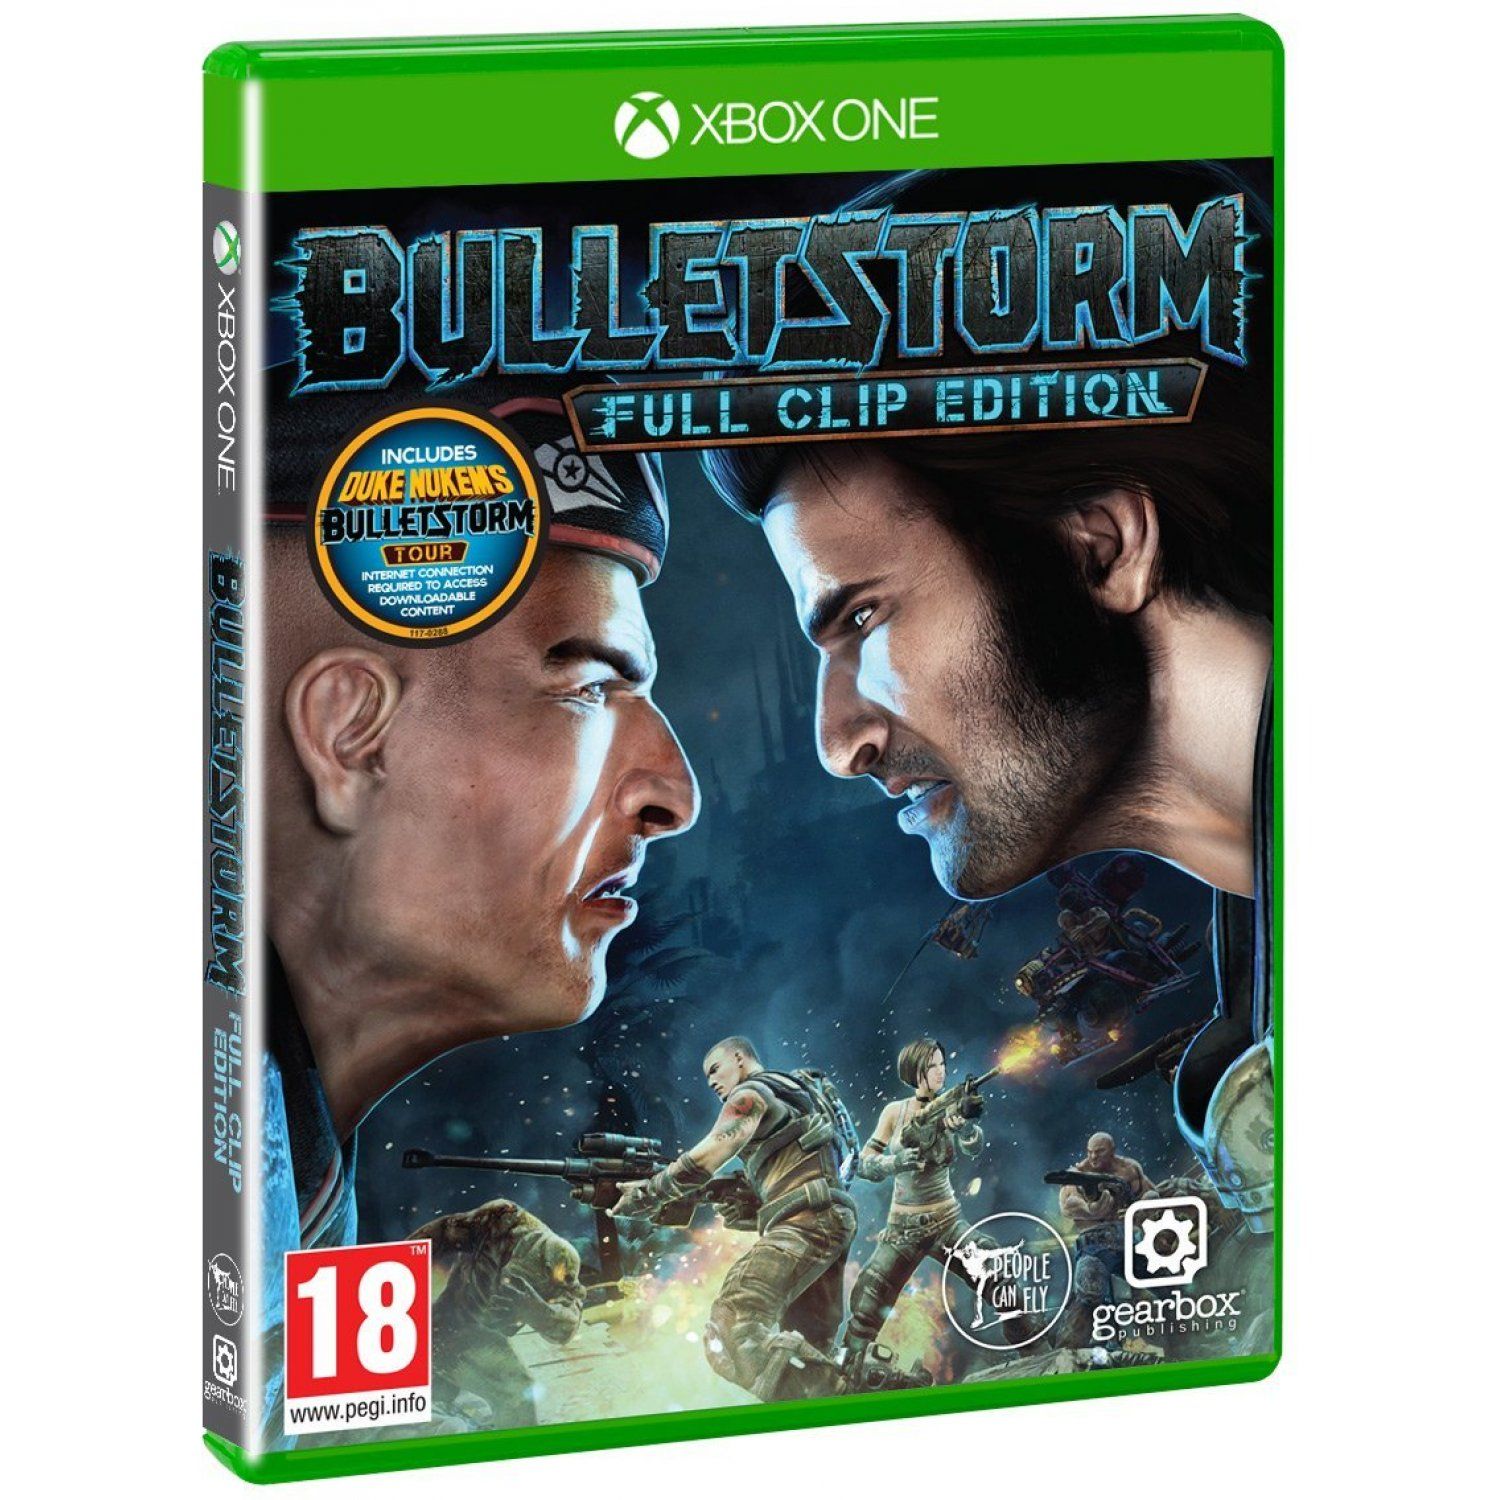 Bulletstorm Full Clip Edition with Duke Nukem’s Bulletstorm Tour